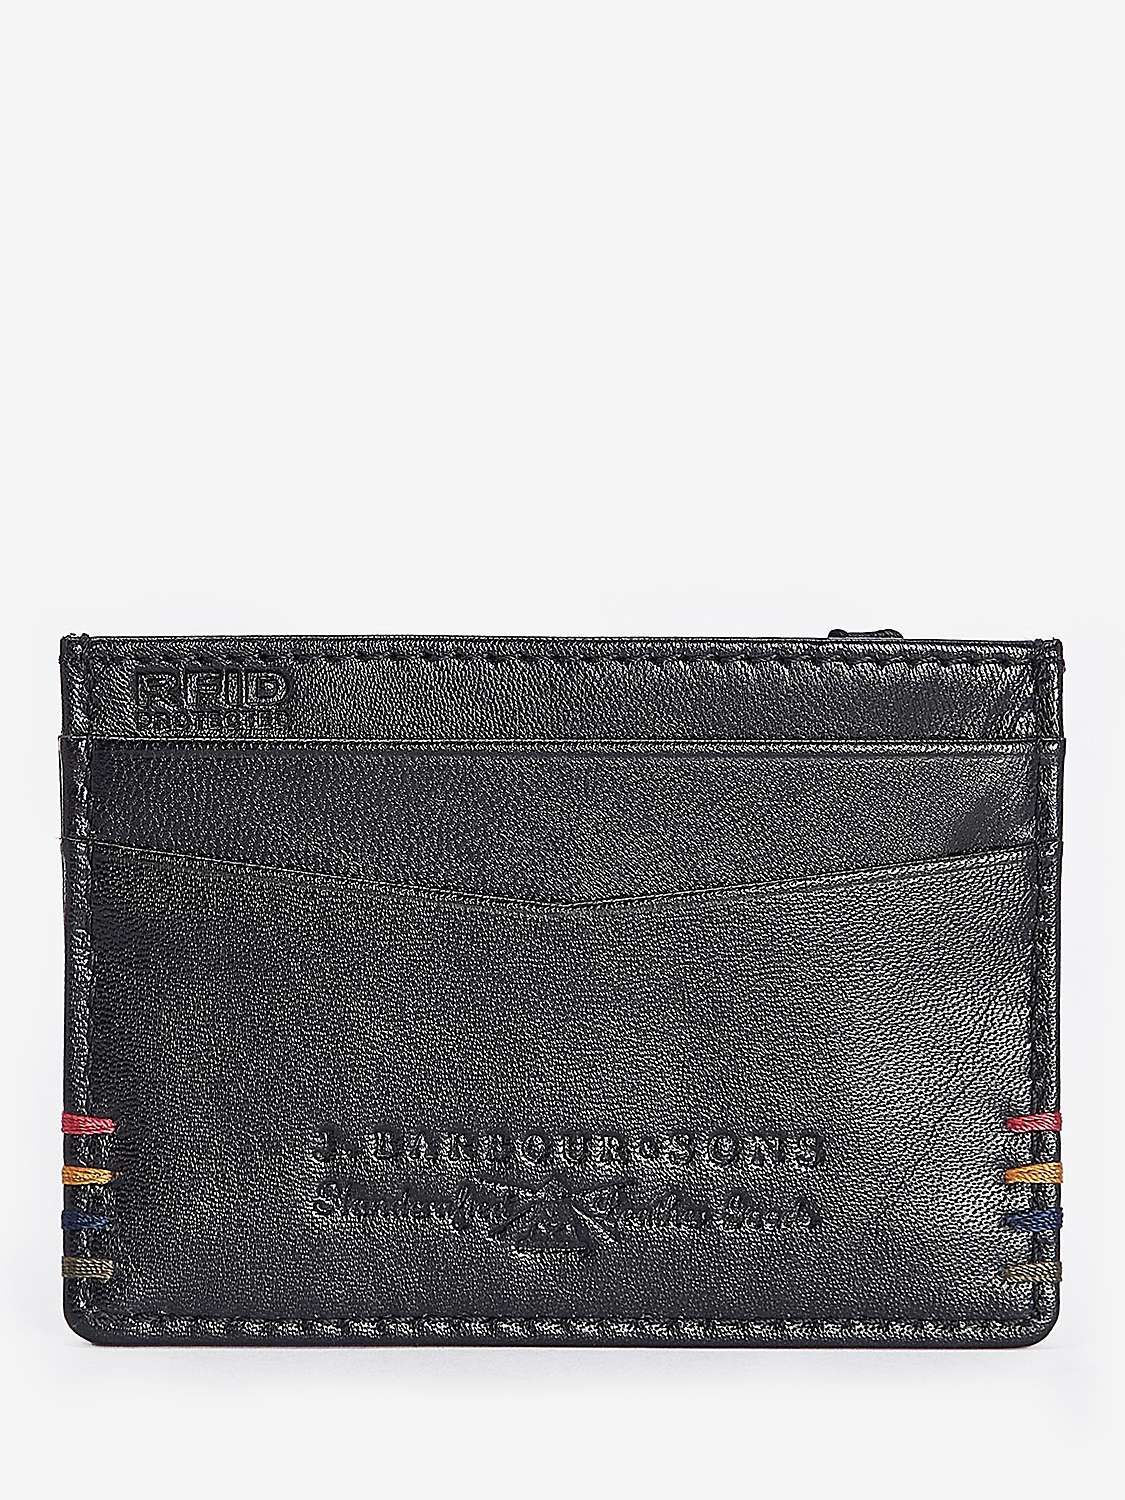 Buy Barbour Cairnell Wallet & Cardholder Gift Set, Black Online at johnlewis.com